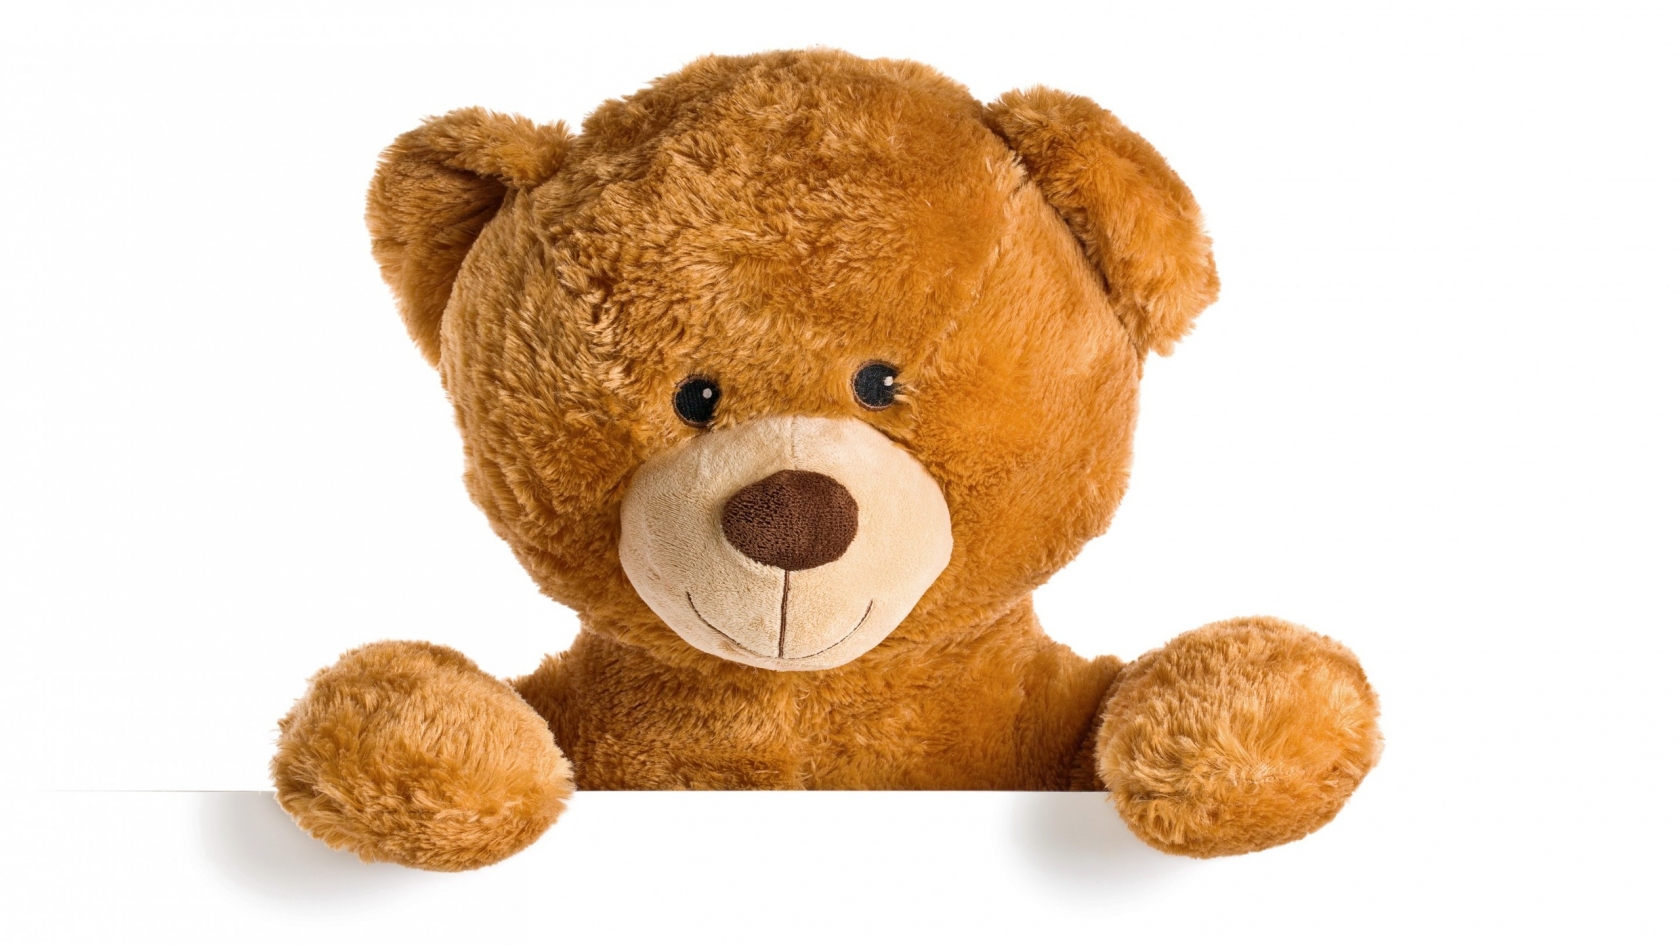 Cute Teddy Bear for 1680 x 945 HDTV resolution